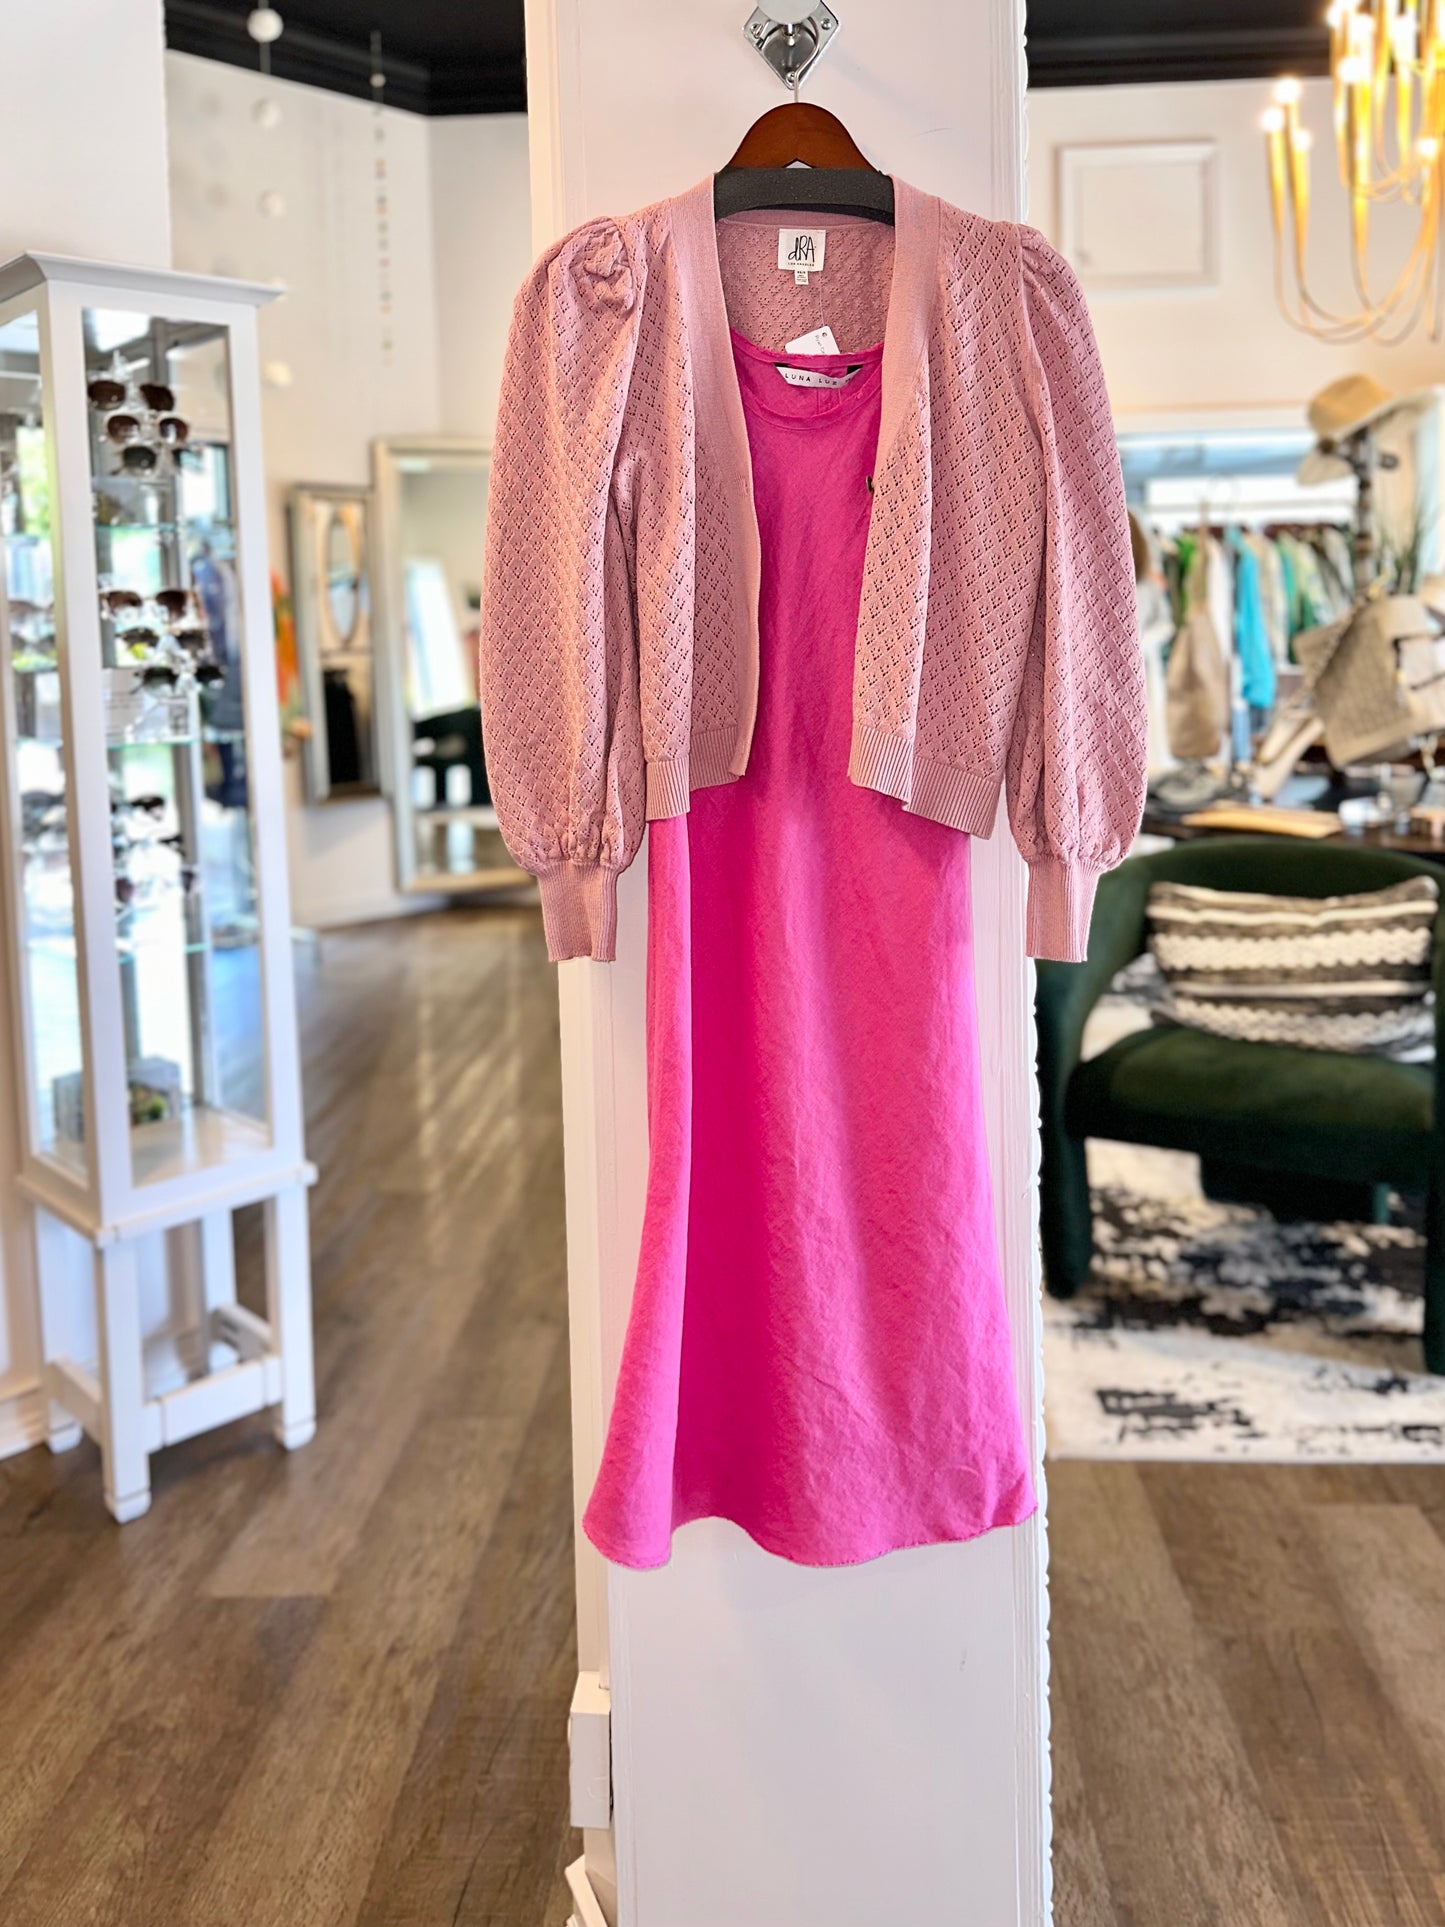 Laguna Beach Tank Dress in hot pink by Luna Luz